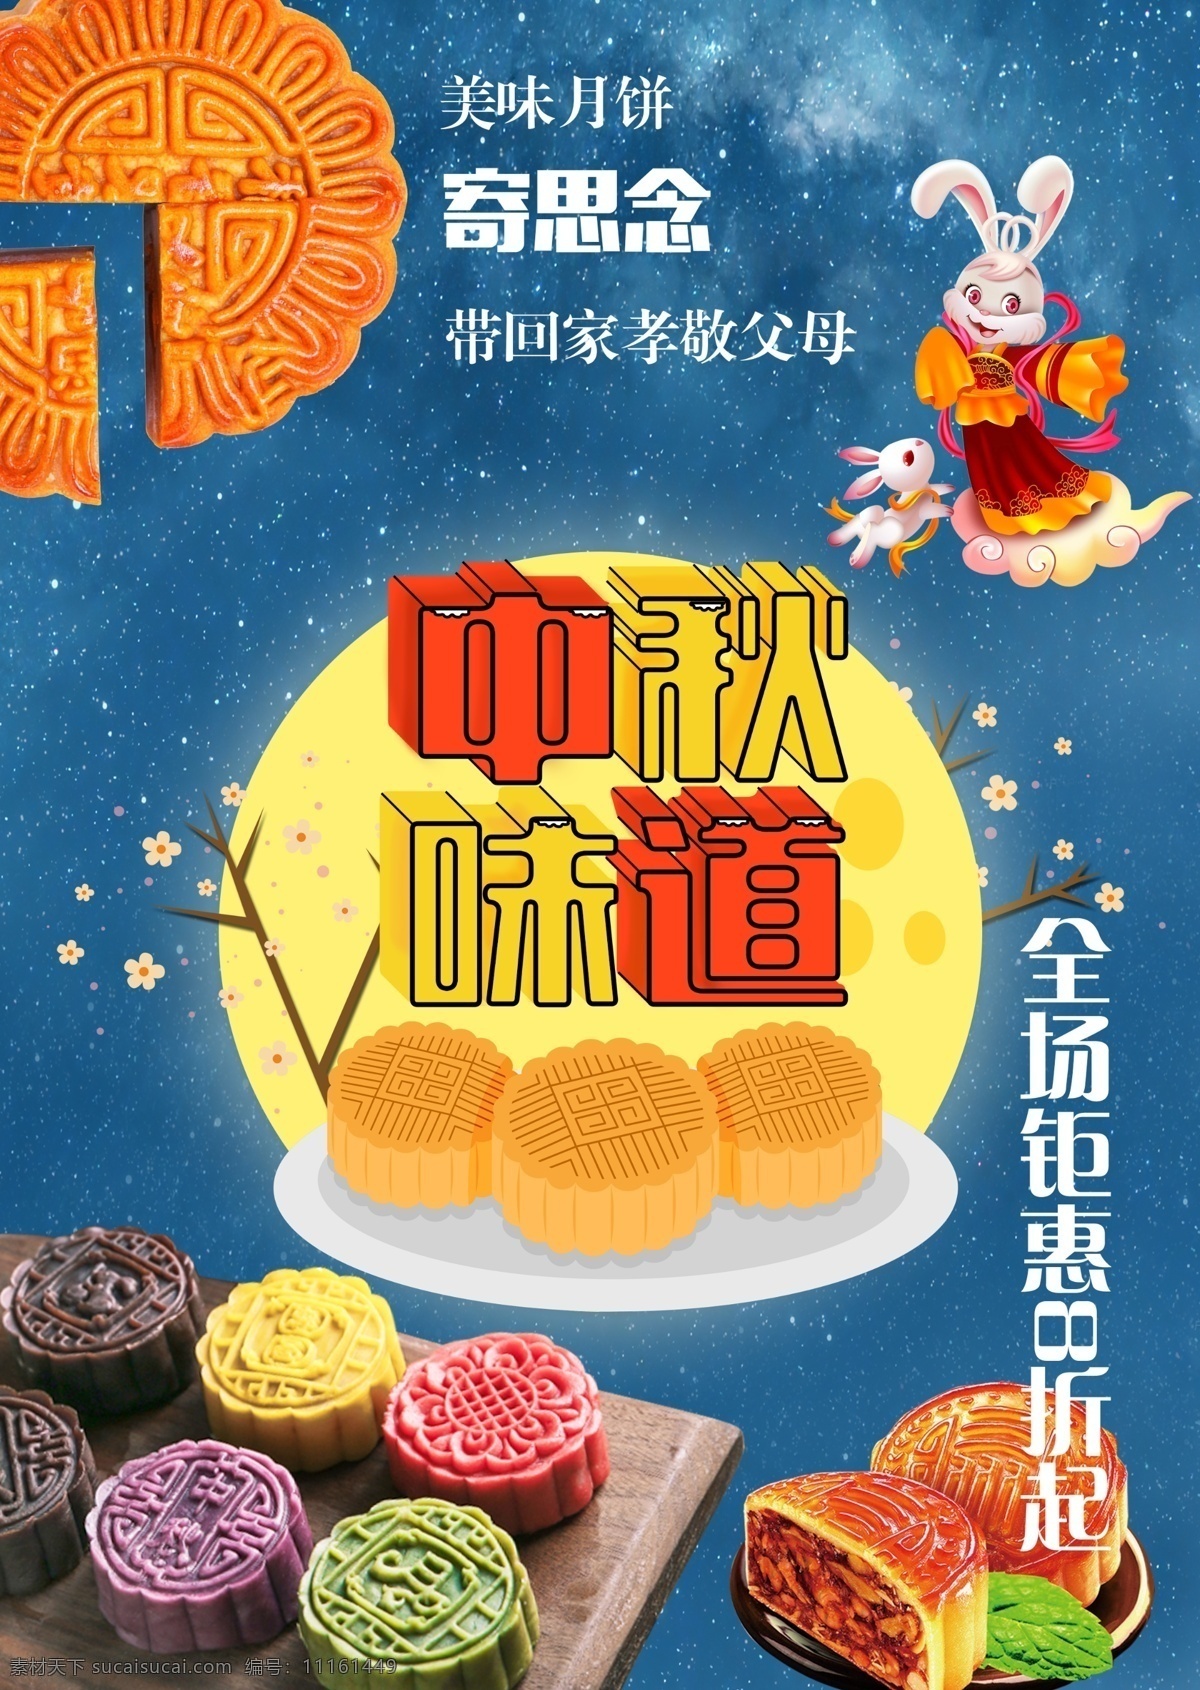 中秋 佳节 美味 月饼 嫦娥 兔子 宣传海报 月亮 星空 中秋味道 思念 好吃